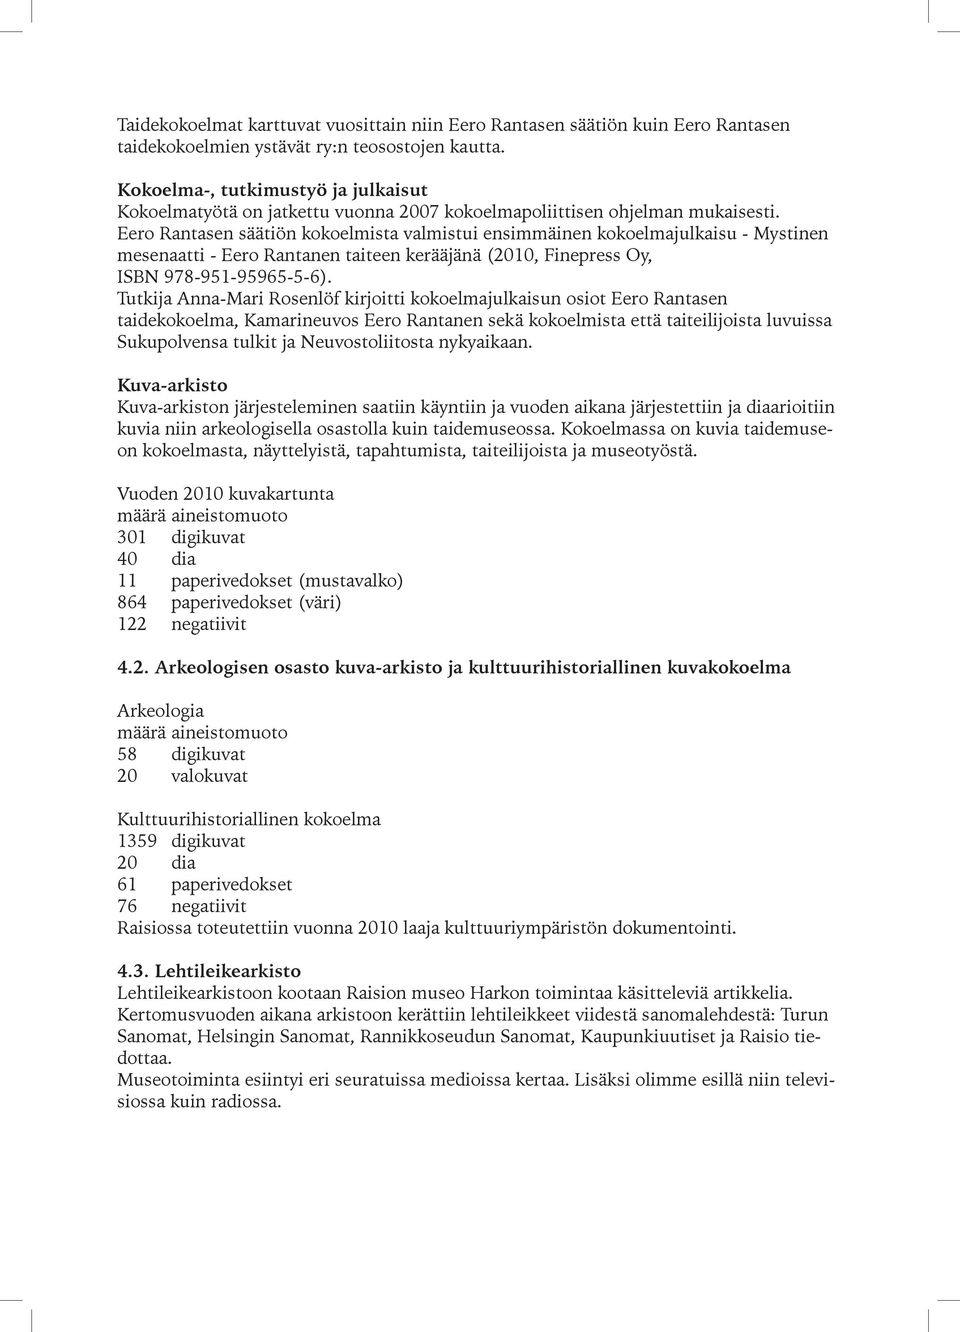 Eero Rantasen säätiön kokoelmista valmistui ensimmäinen kokoelmajulkaisu - Mystinen mesenaatti - Eero Rantanen taiteen kerääjänä (2010, Finepress Oy, ISBN 978-951-95965-5-6).